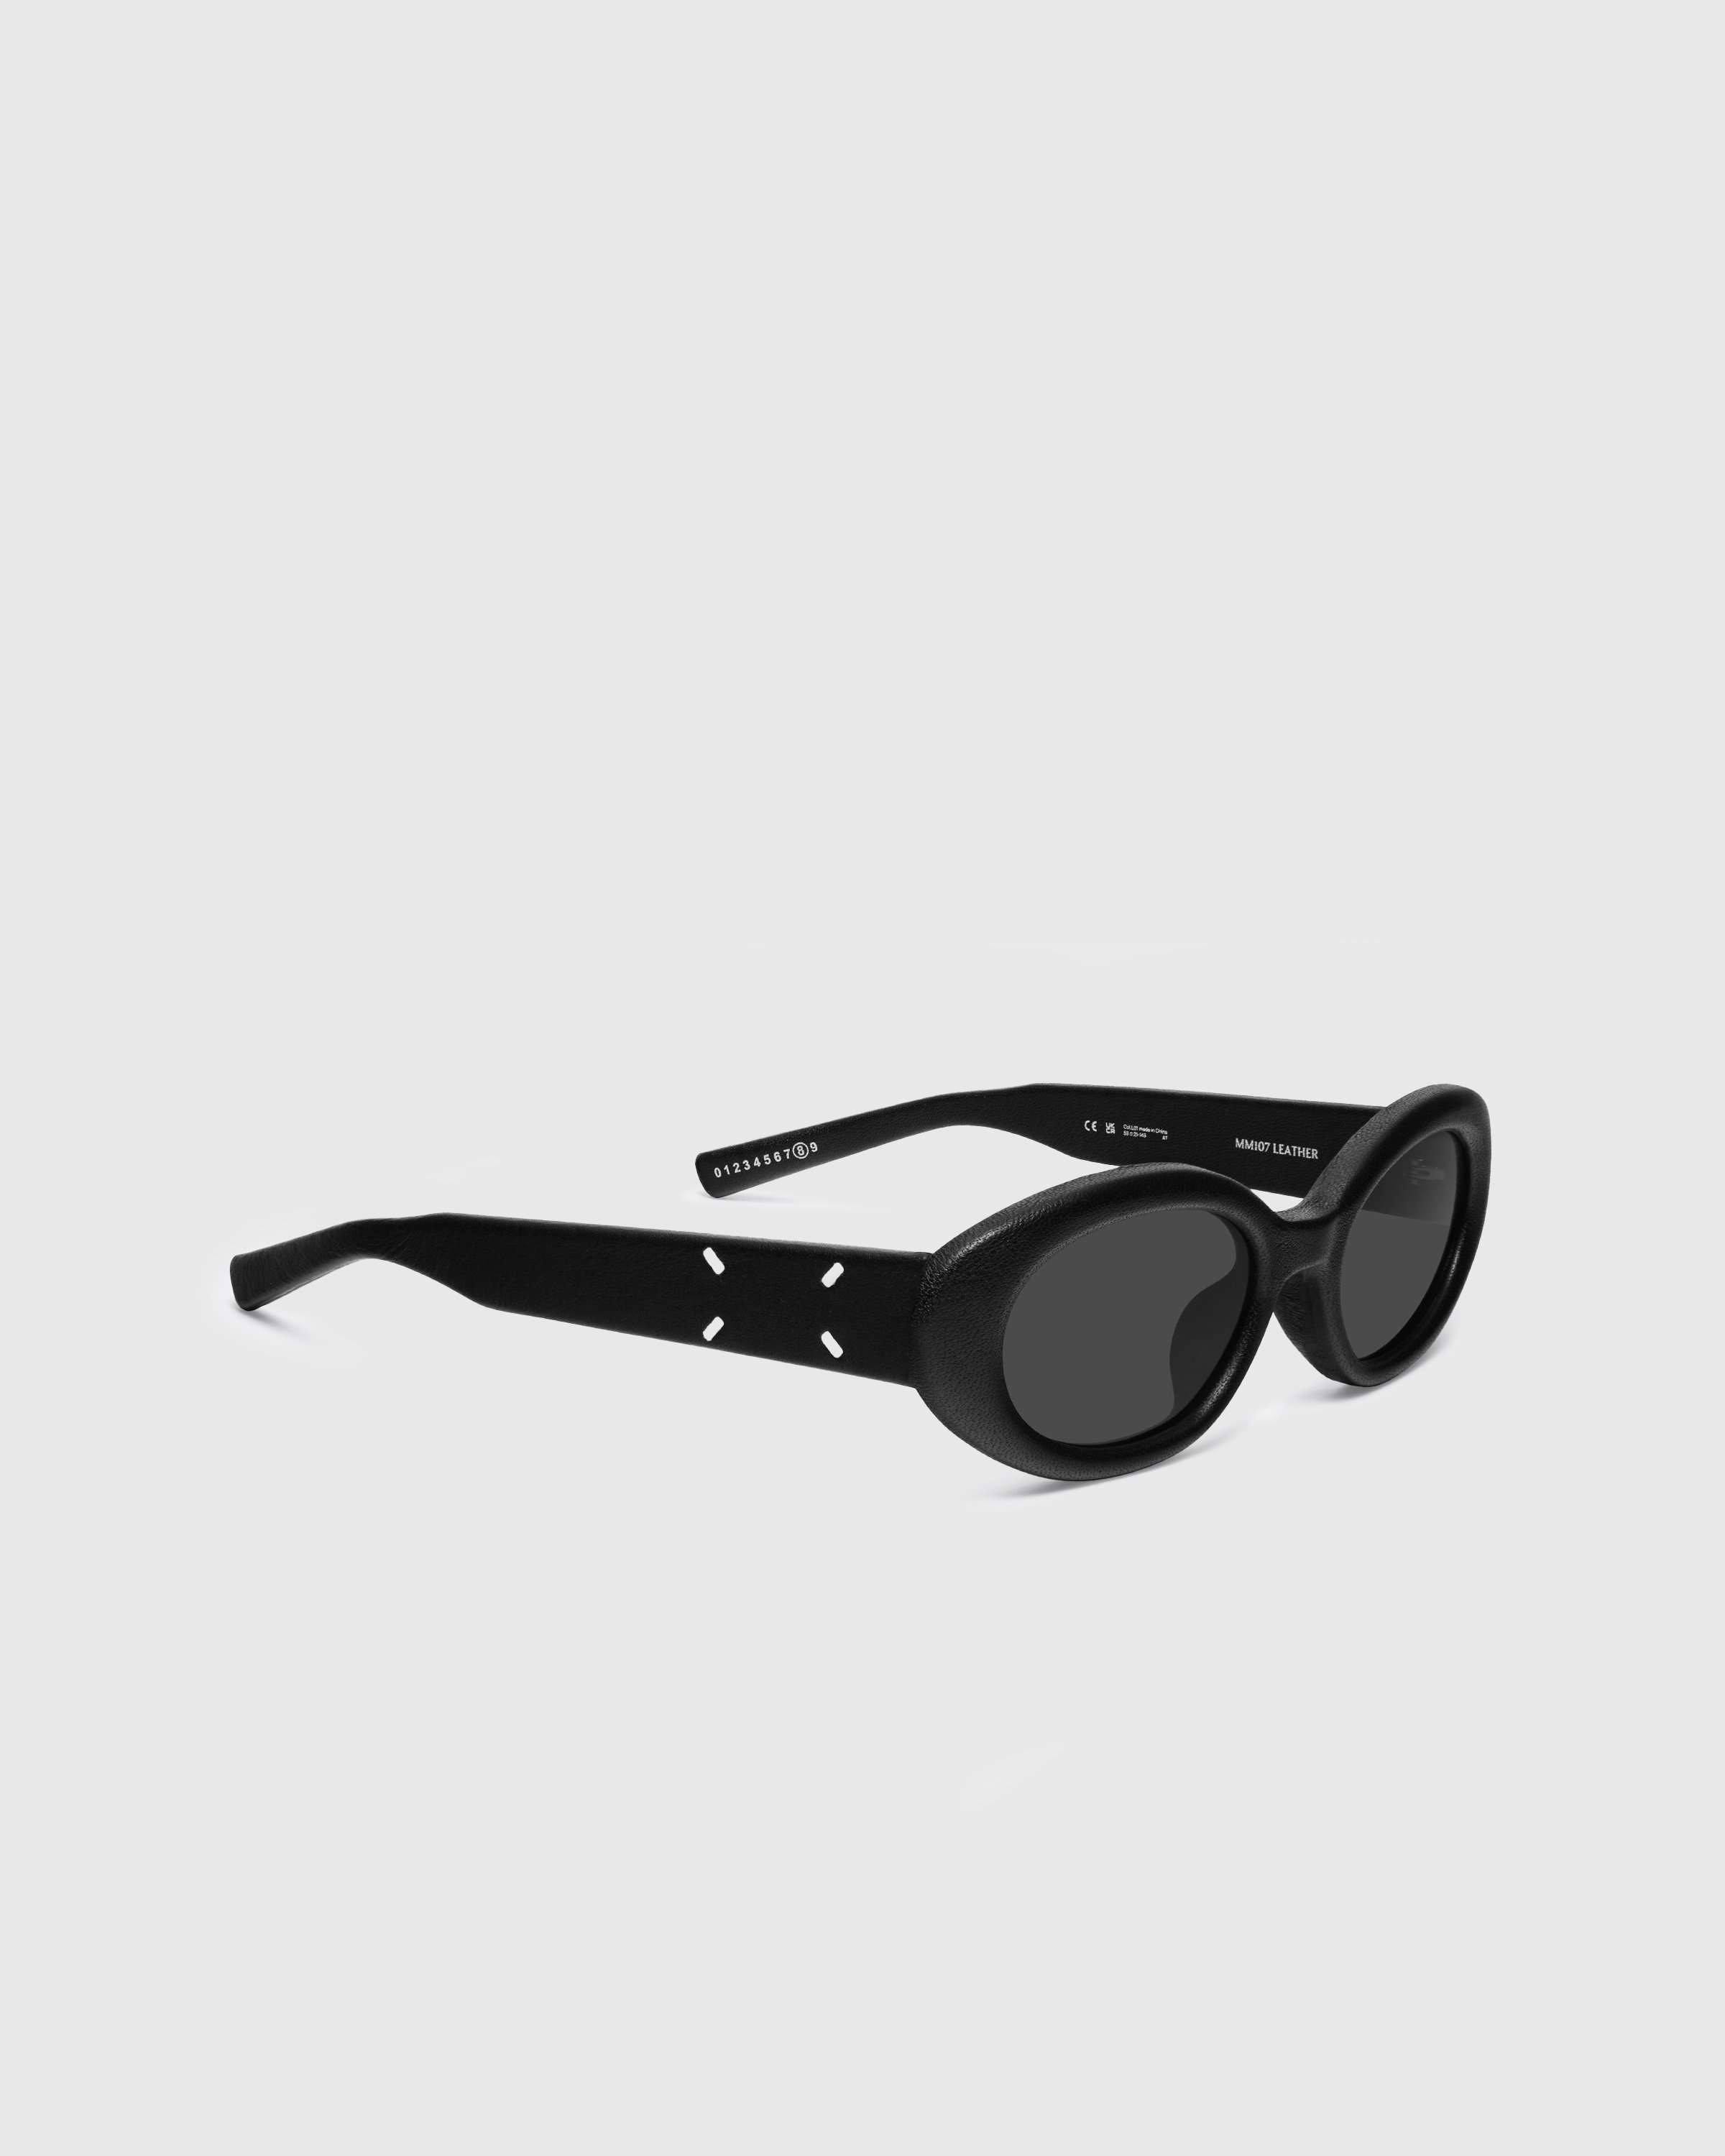 Maison Margiela x Gentle Monster - Sunglasses MM107 LEATHER-L01 - Accessories - Black - Image 3